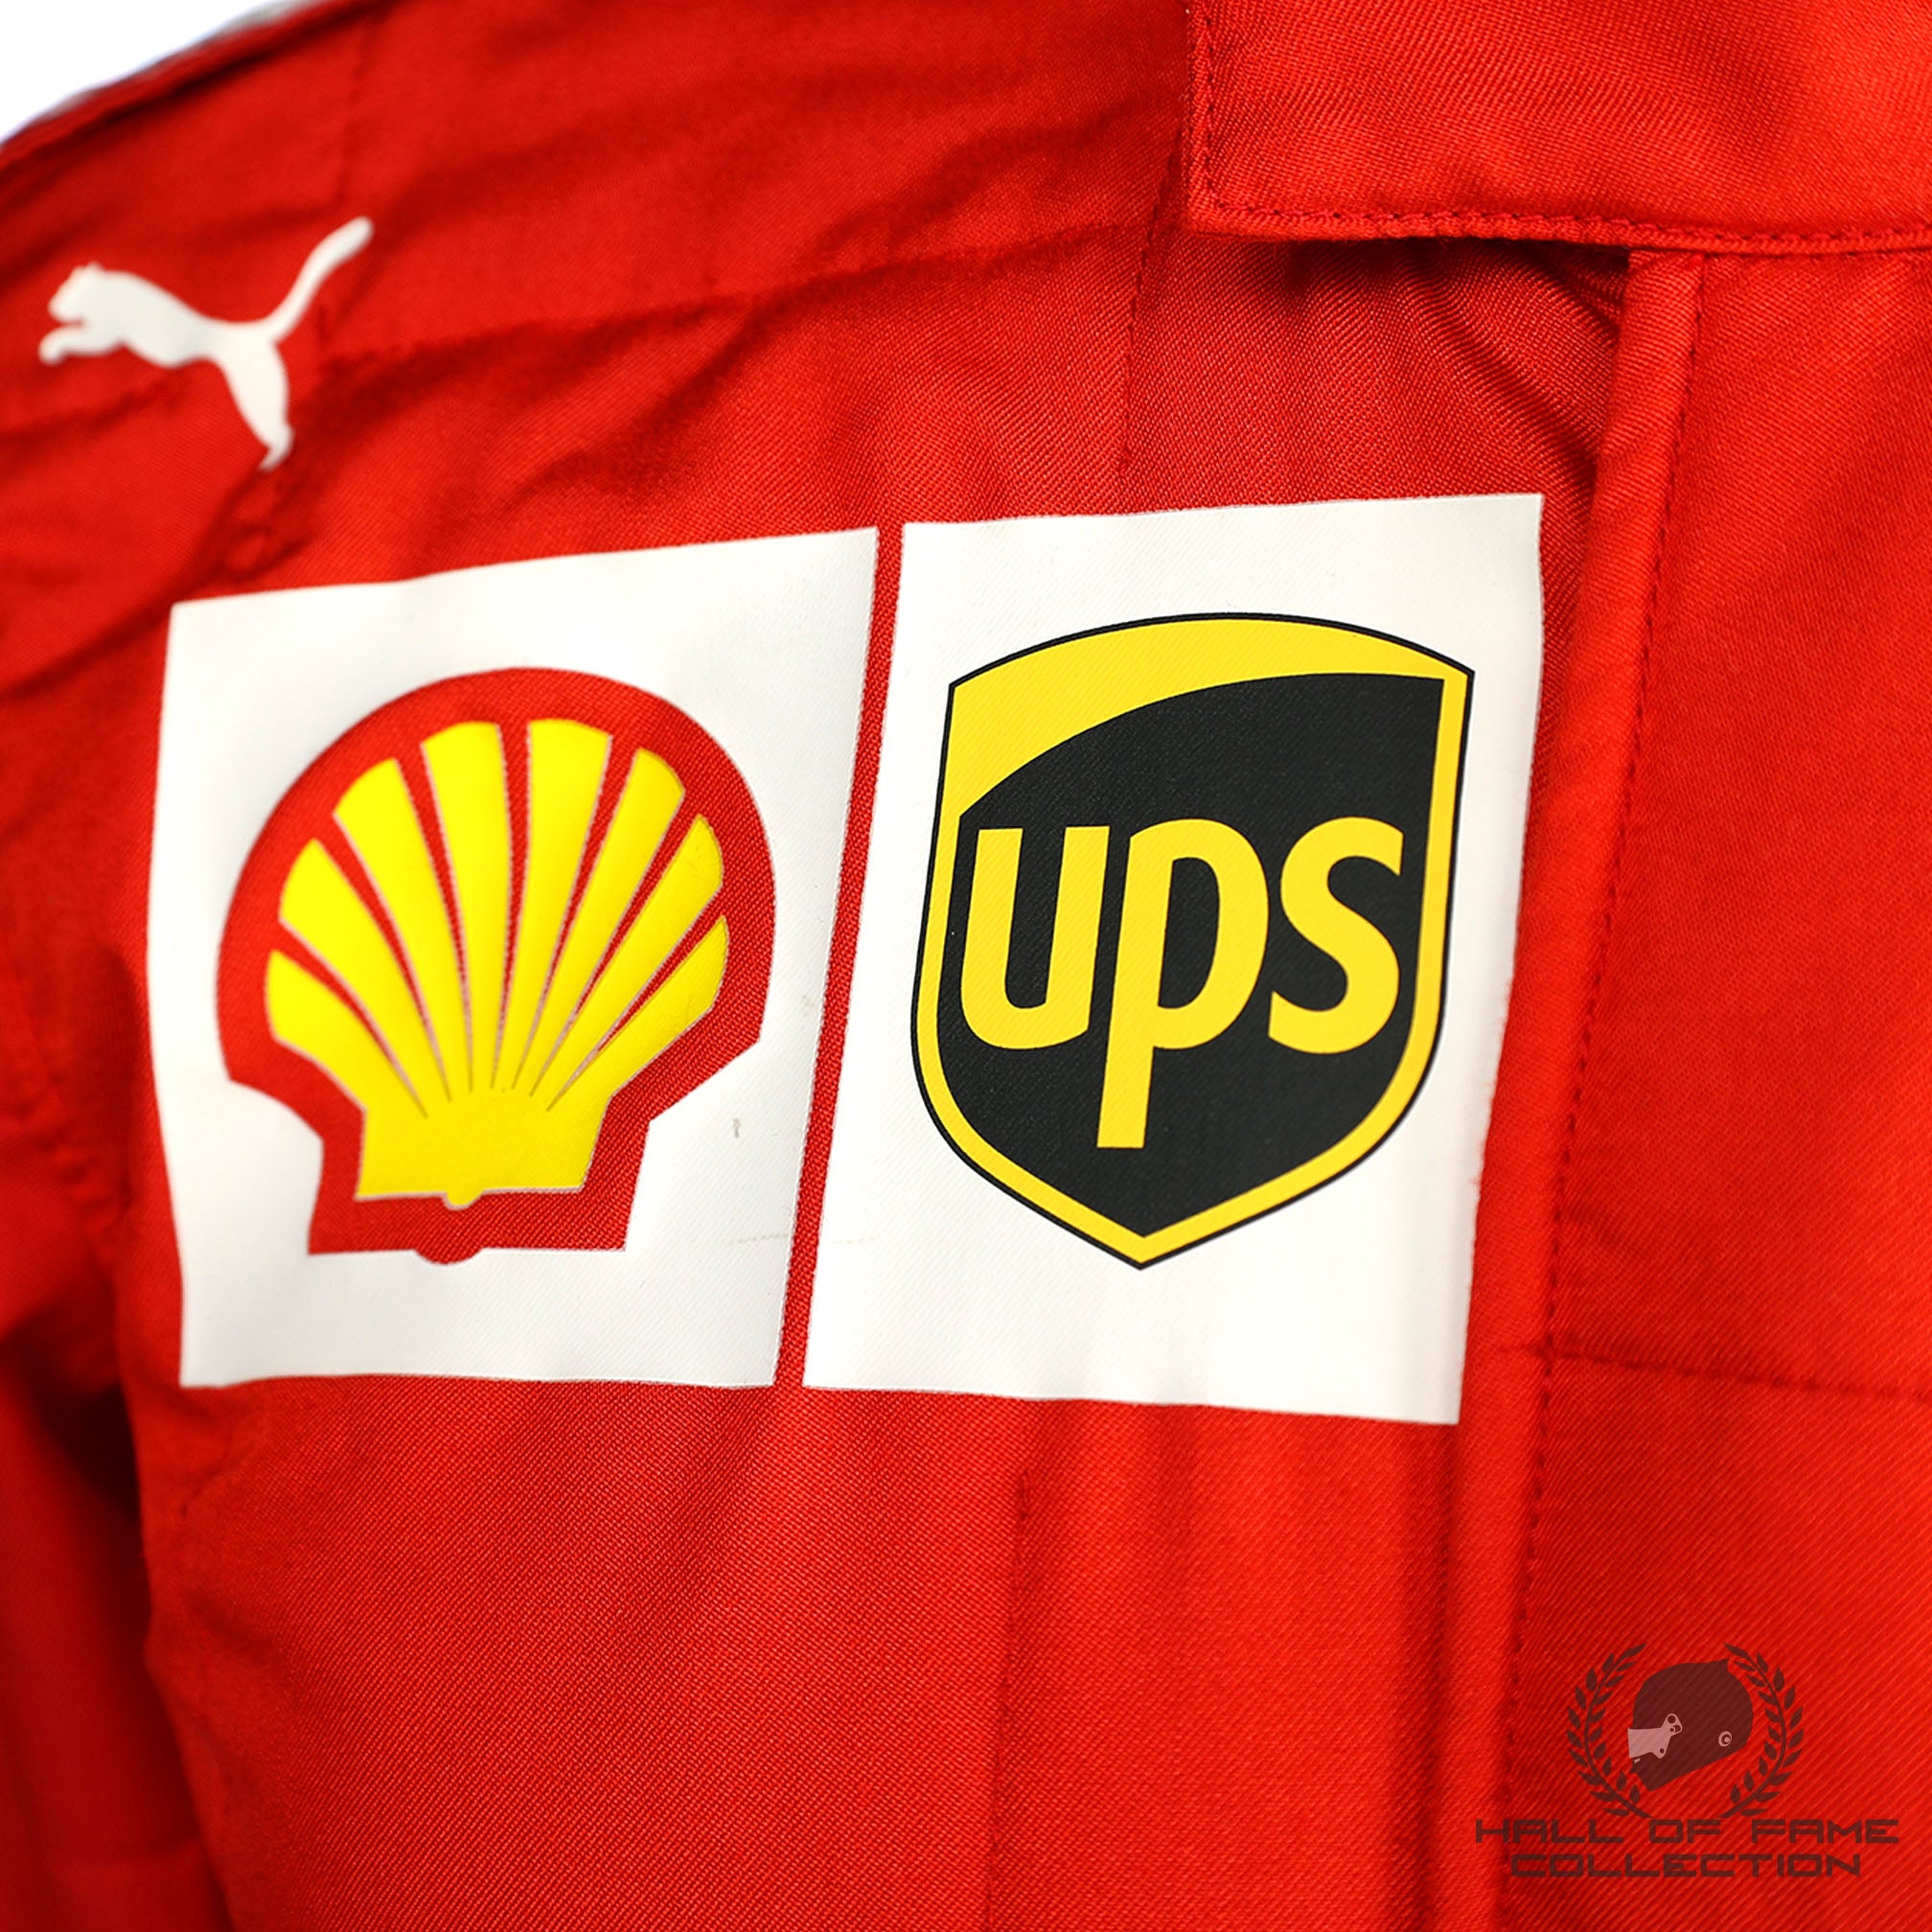 2021 Carlos Sainz Race Used Scuderia Ferrari F1 Suit